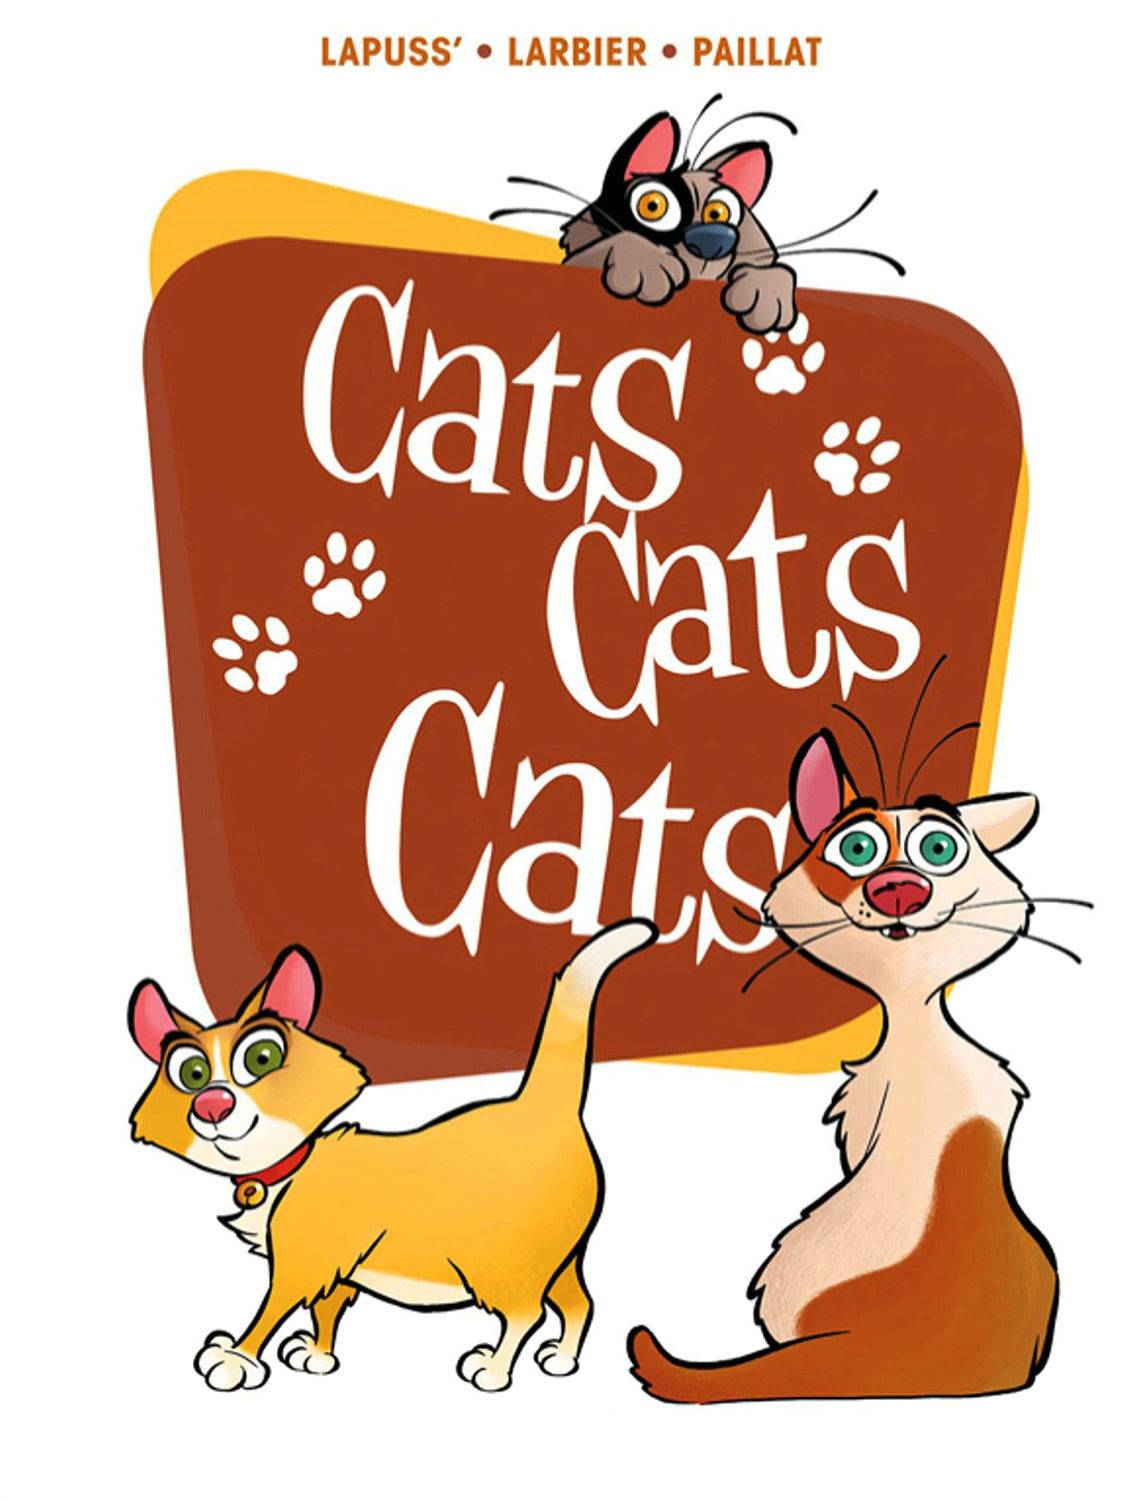 CATS CATS CATS GN - Third Eye